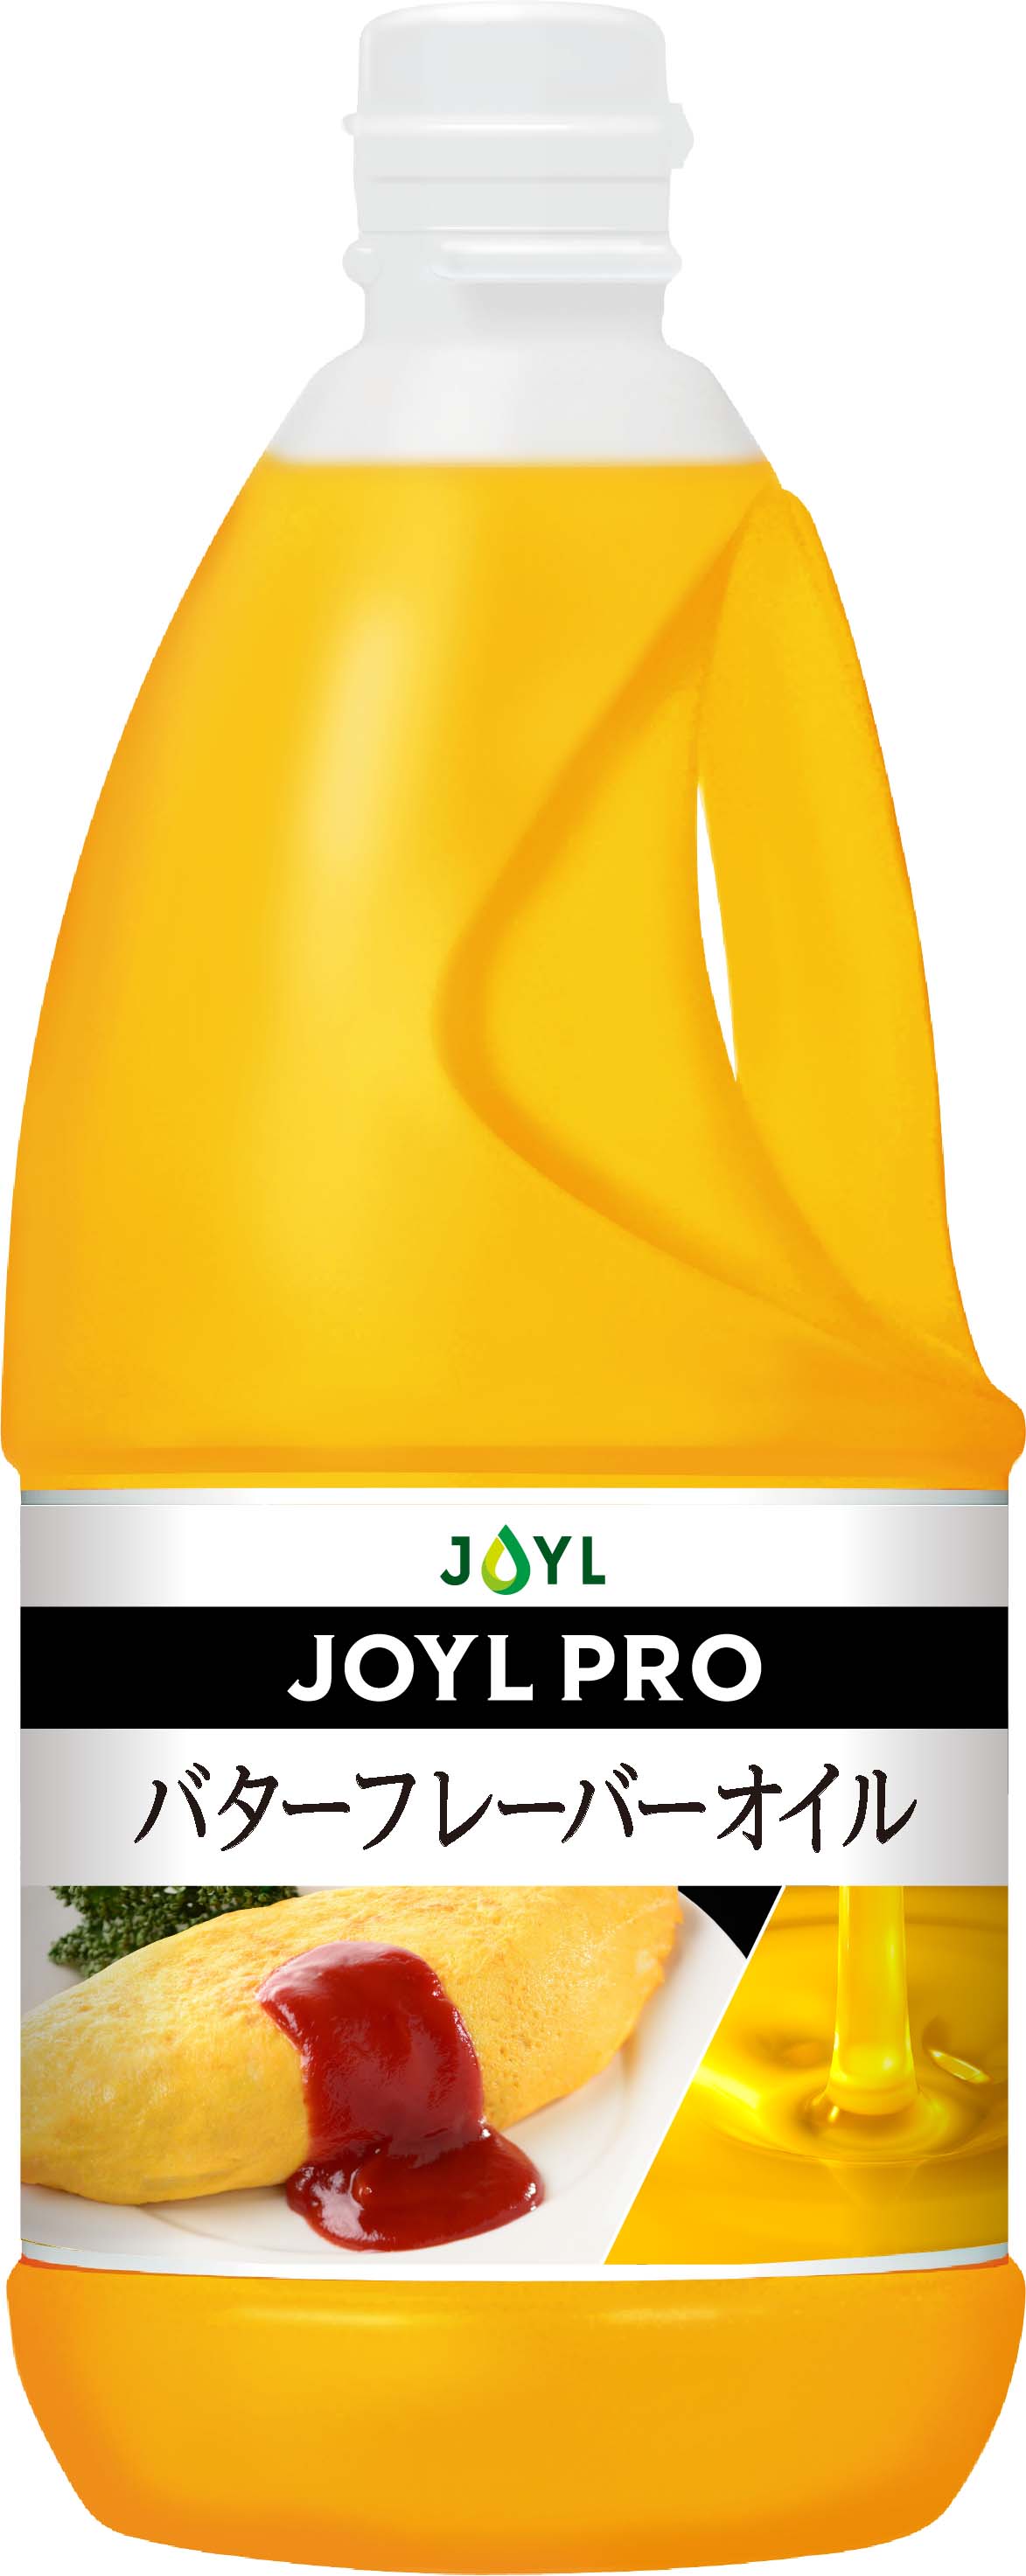 JOYLPROバターフレーバーオイル1,350g